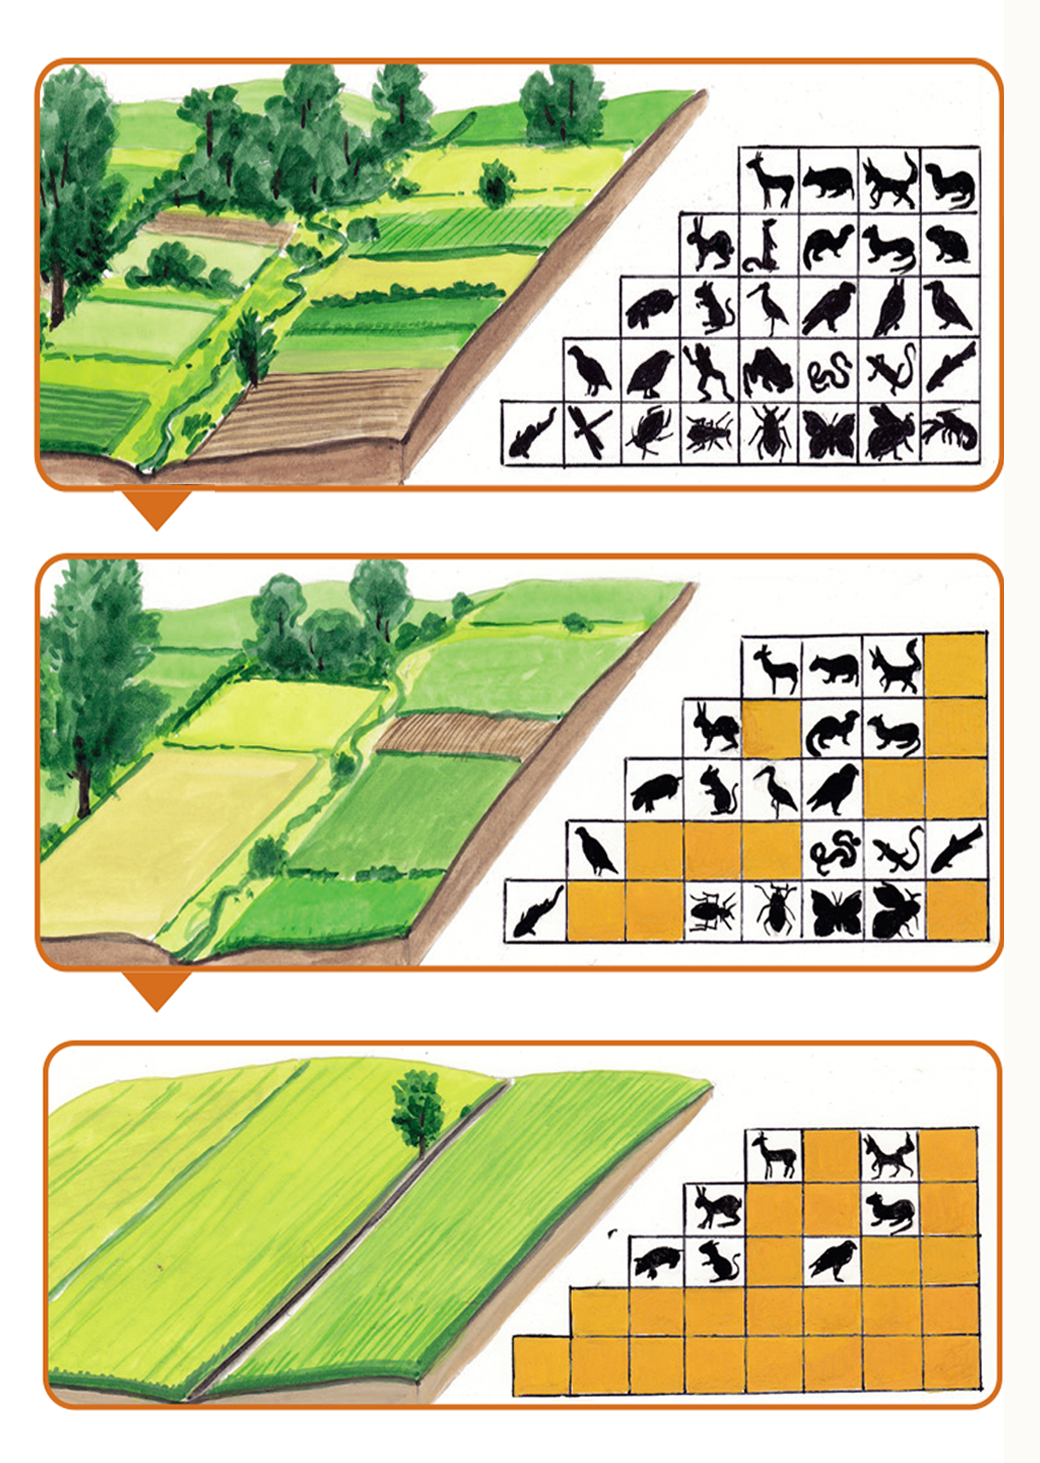 Biodiverzitás alakulása a mezőgazdaság intenzívebbé válása tükrében (Grafika: Zsoldos Márton)